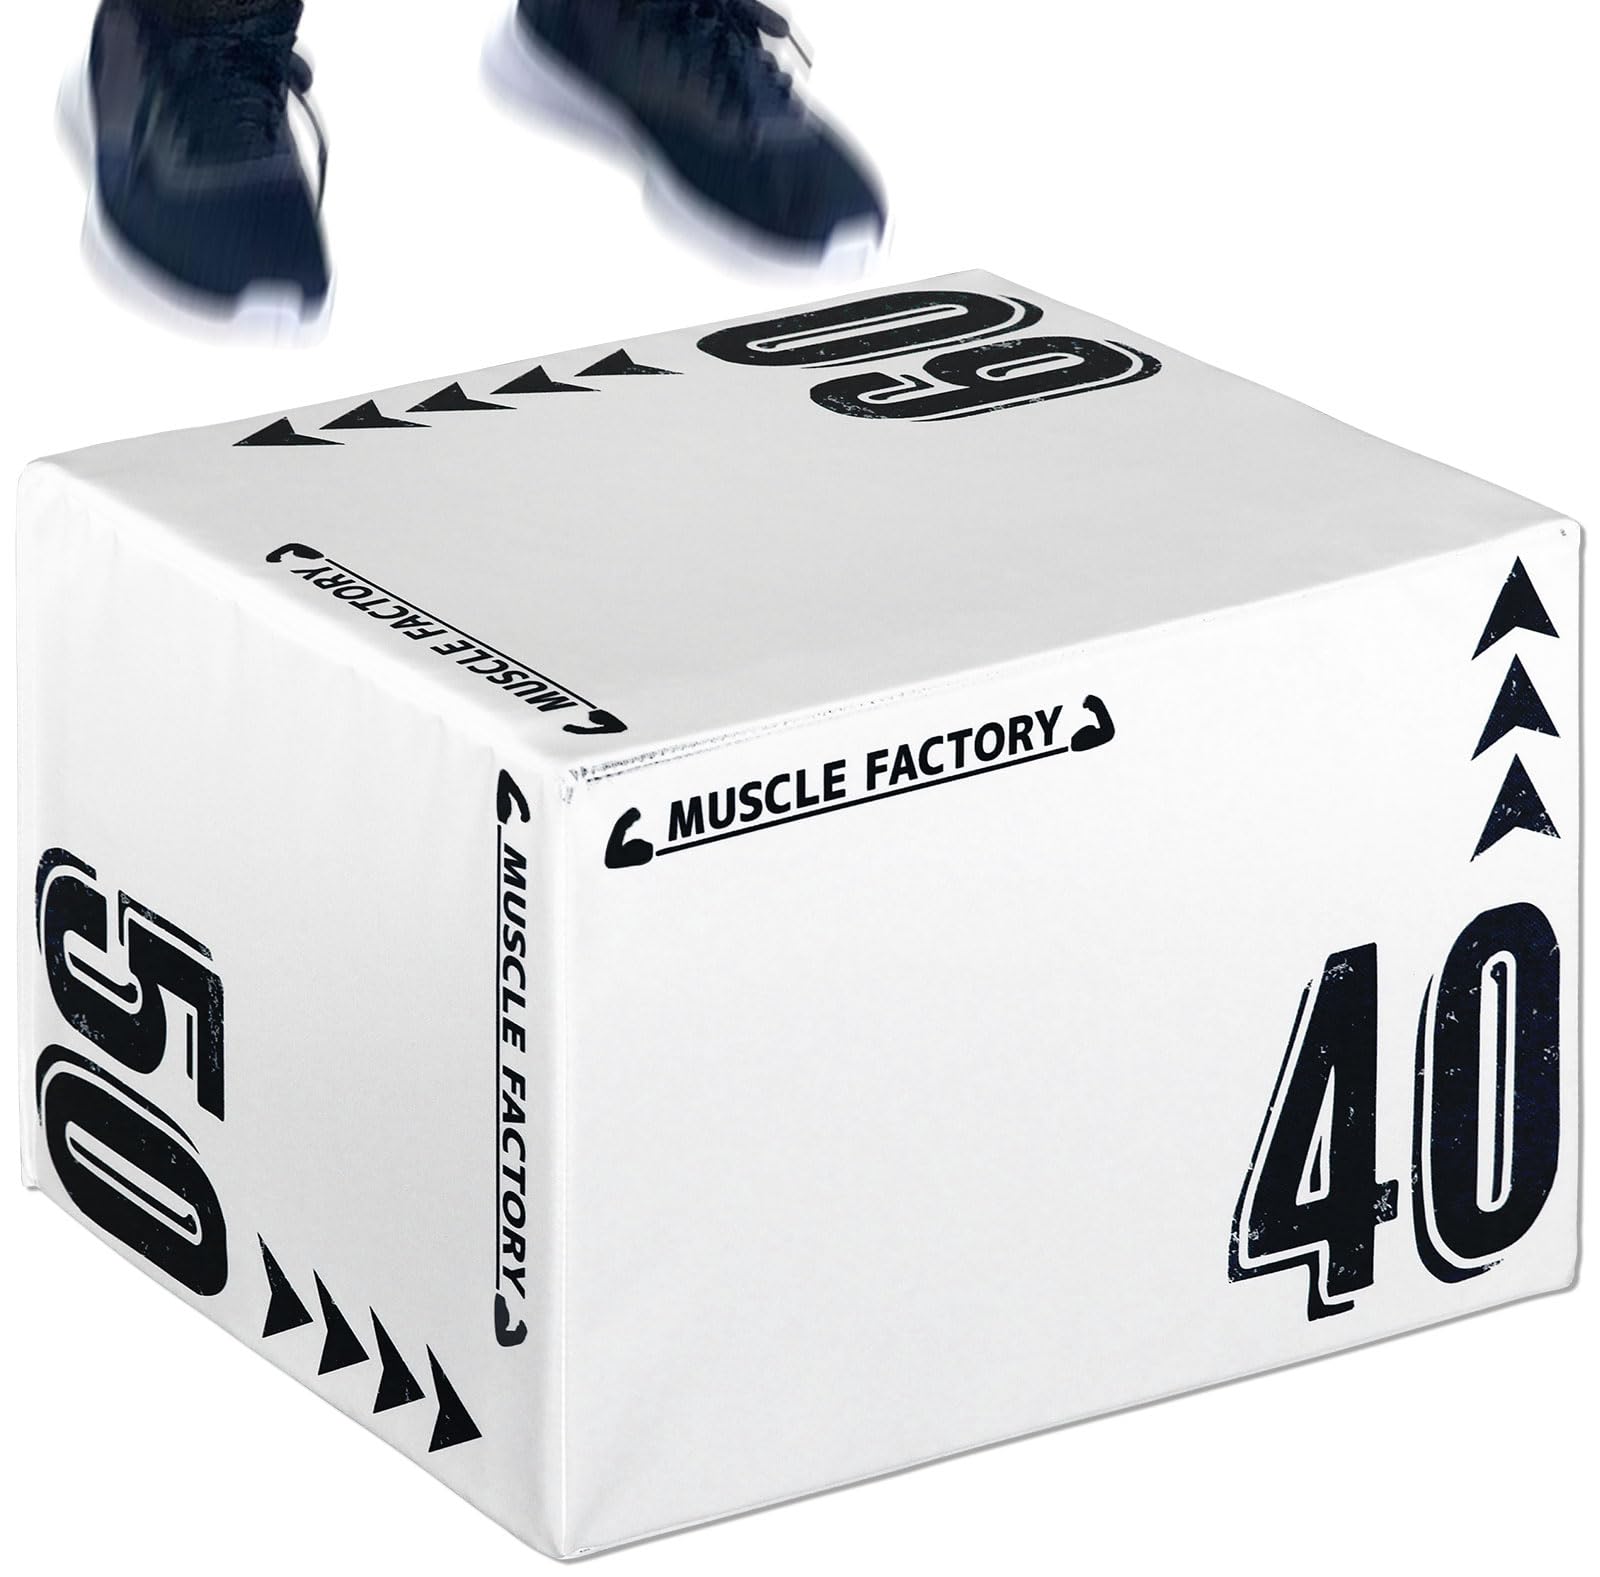 MUSCLE FACTORY プライオボックス ソフト 40×50×60cm プライオメトリクス ボックス 昇降台 ジャンプ台 ステップ台 跳び箱 3